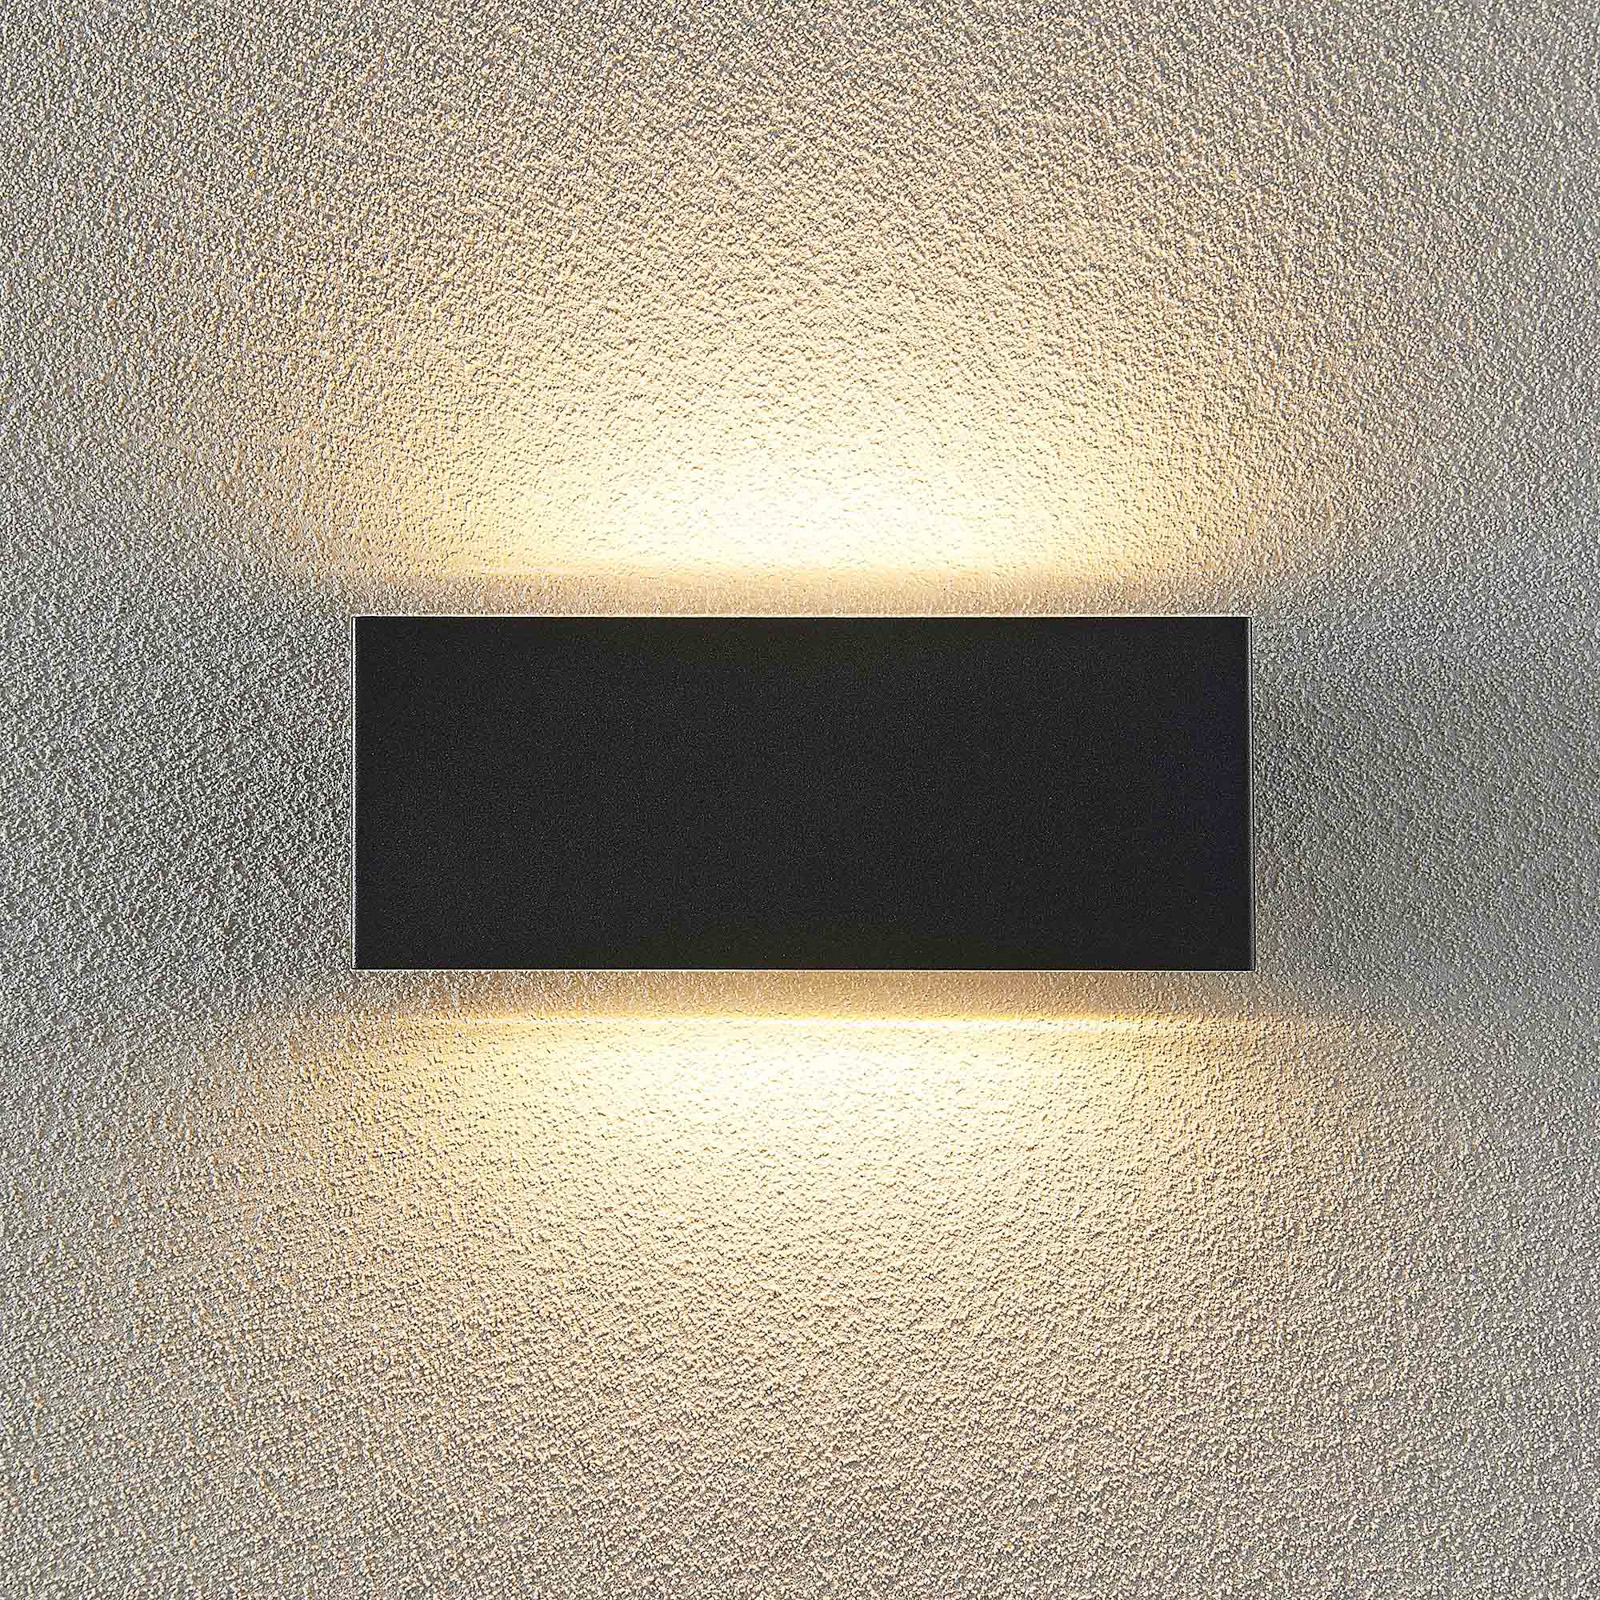 Lindby Kiban -LED-ulkoseinälamppu, tummanharmaa